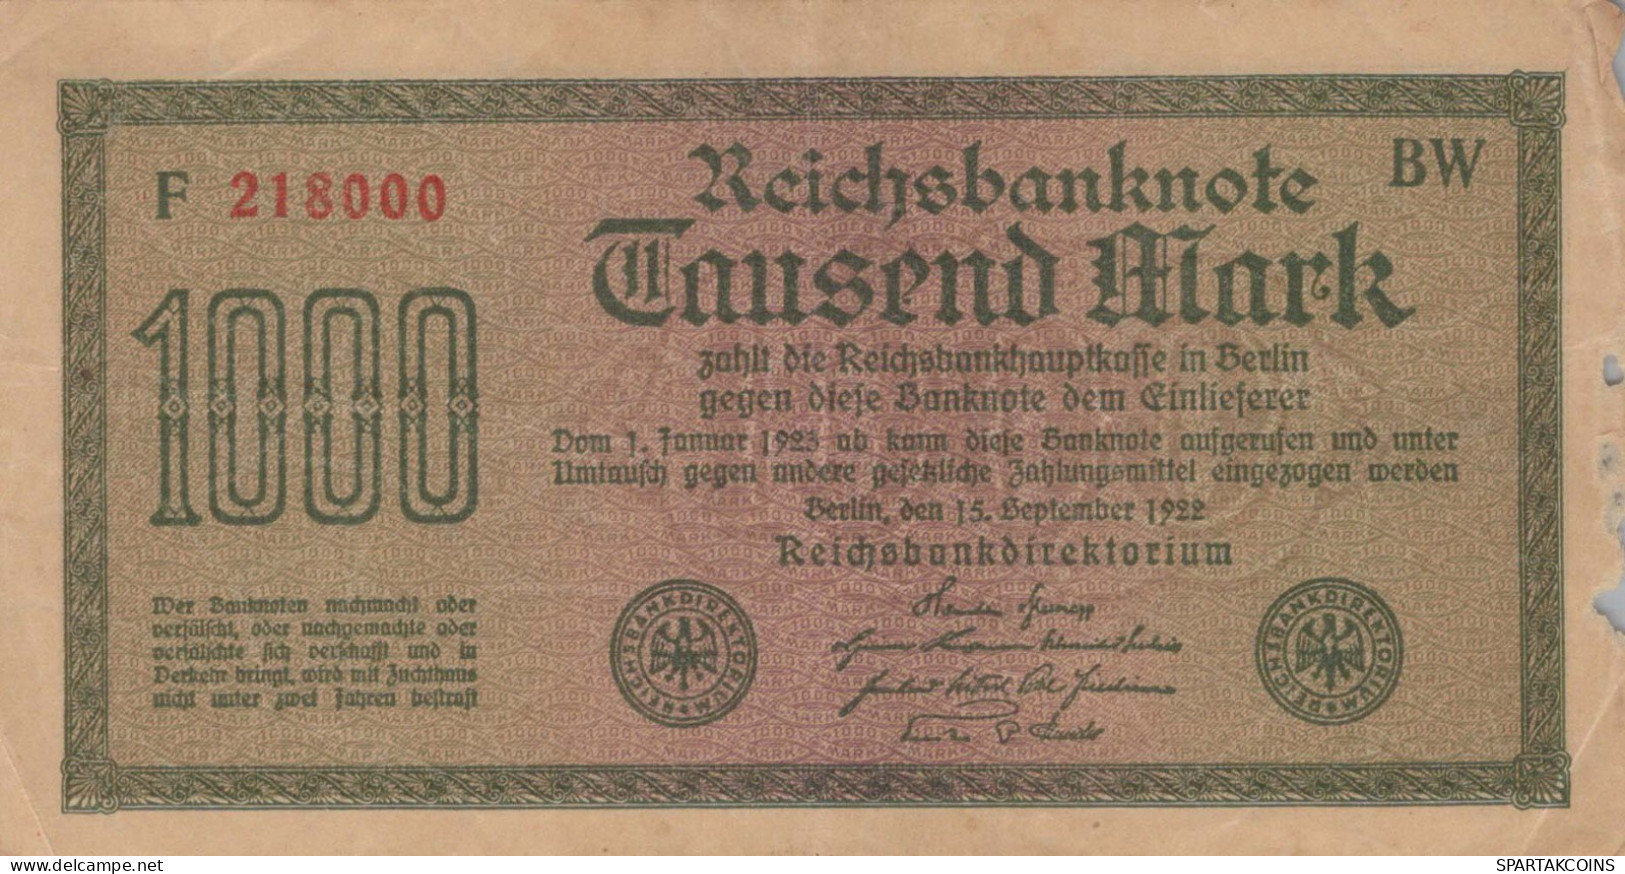 1000 MARK 1922 Stadt BERLIN DEUTSCHLAND Papiergeld Banknote #PL466 - [11] Local Banknote Issues